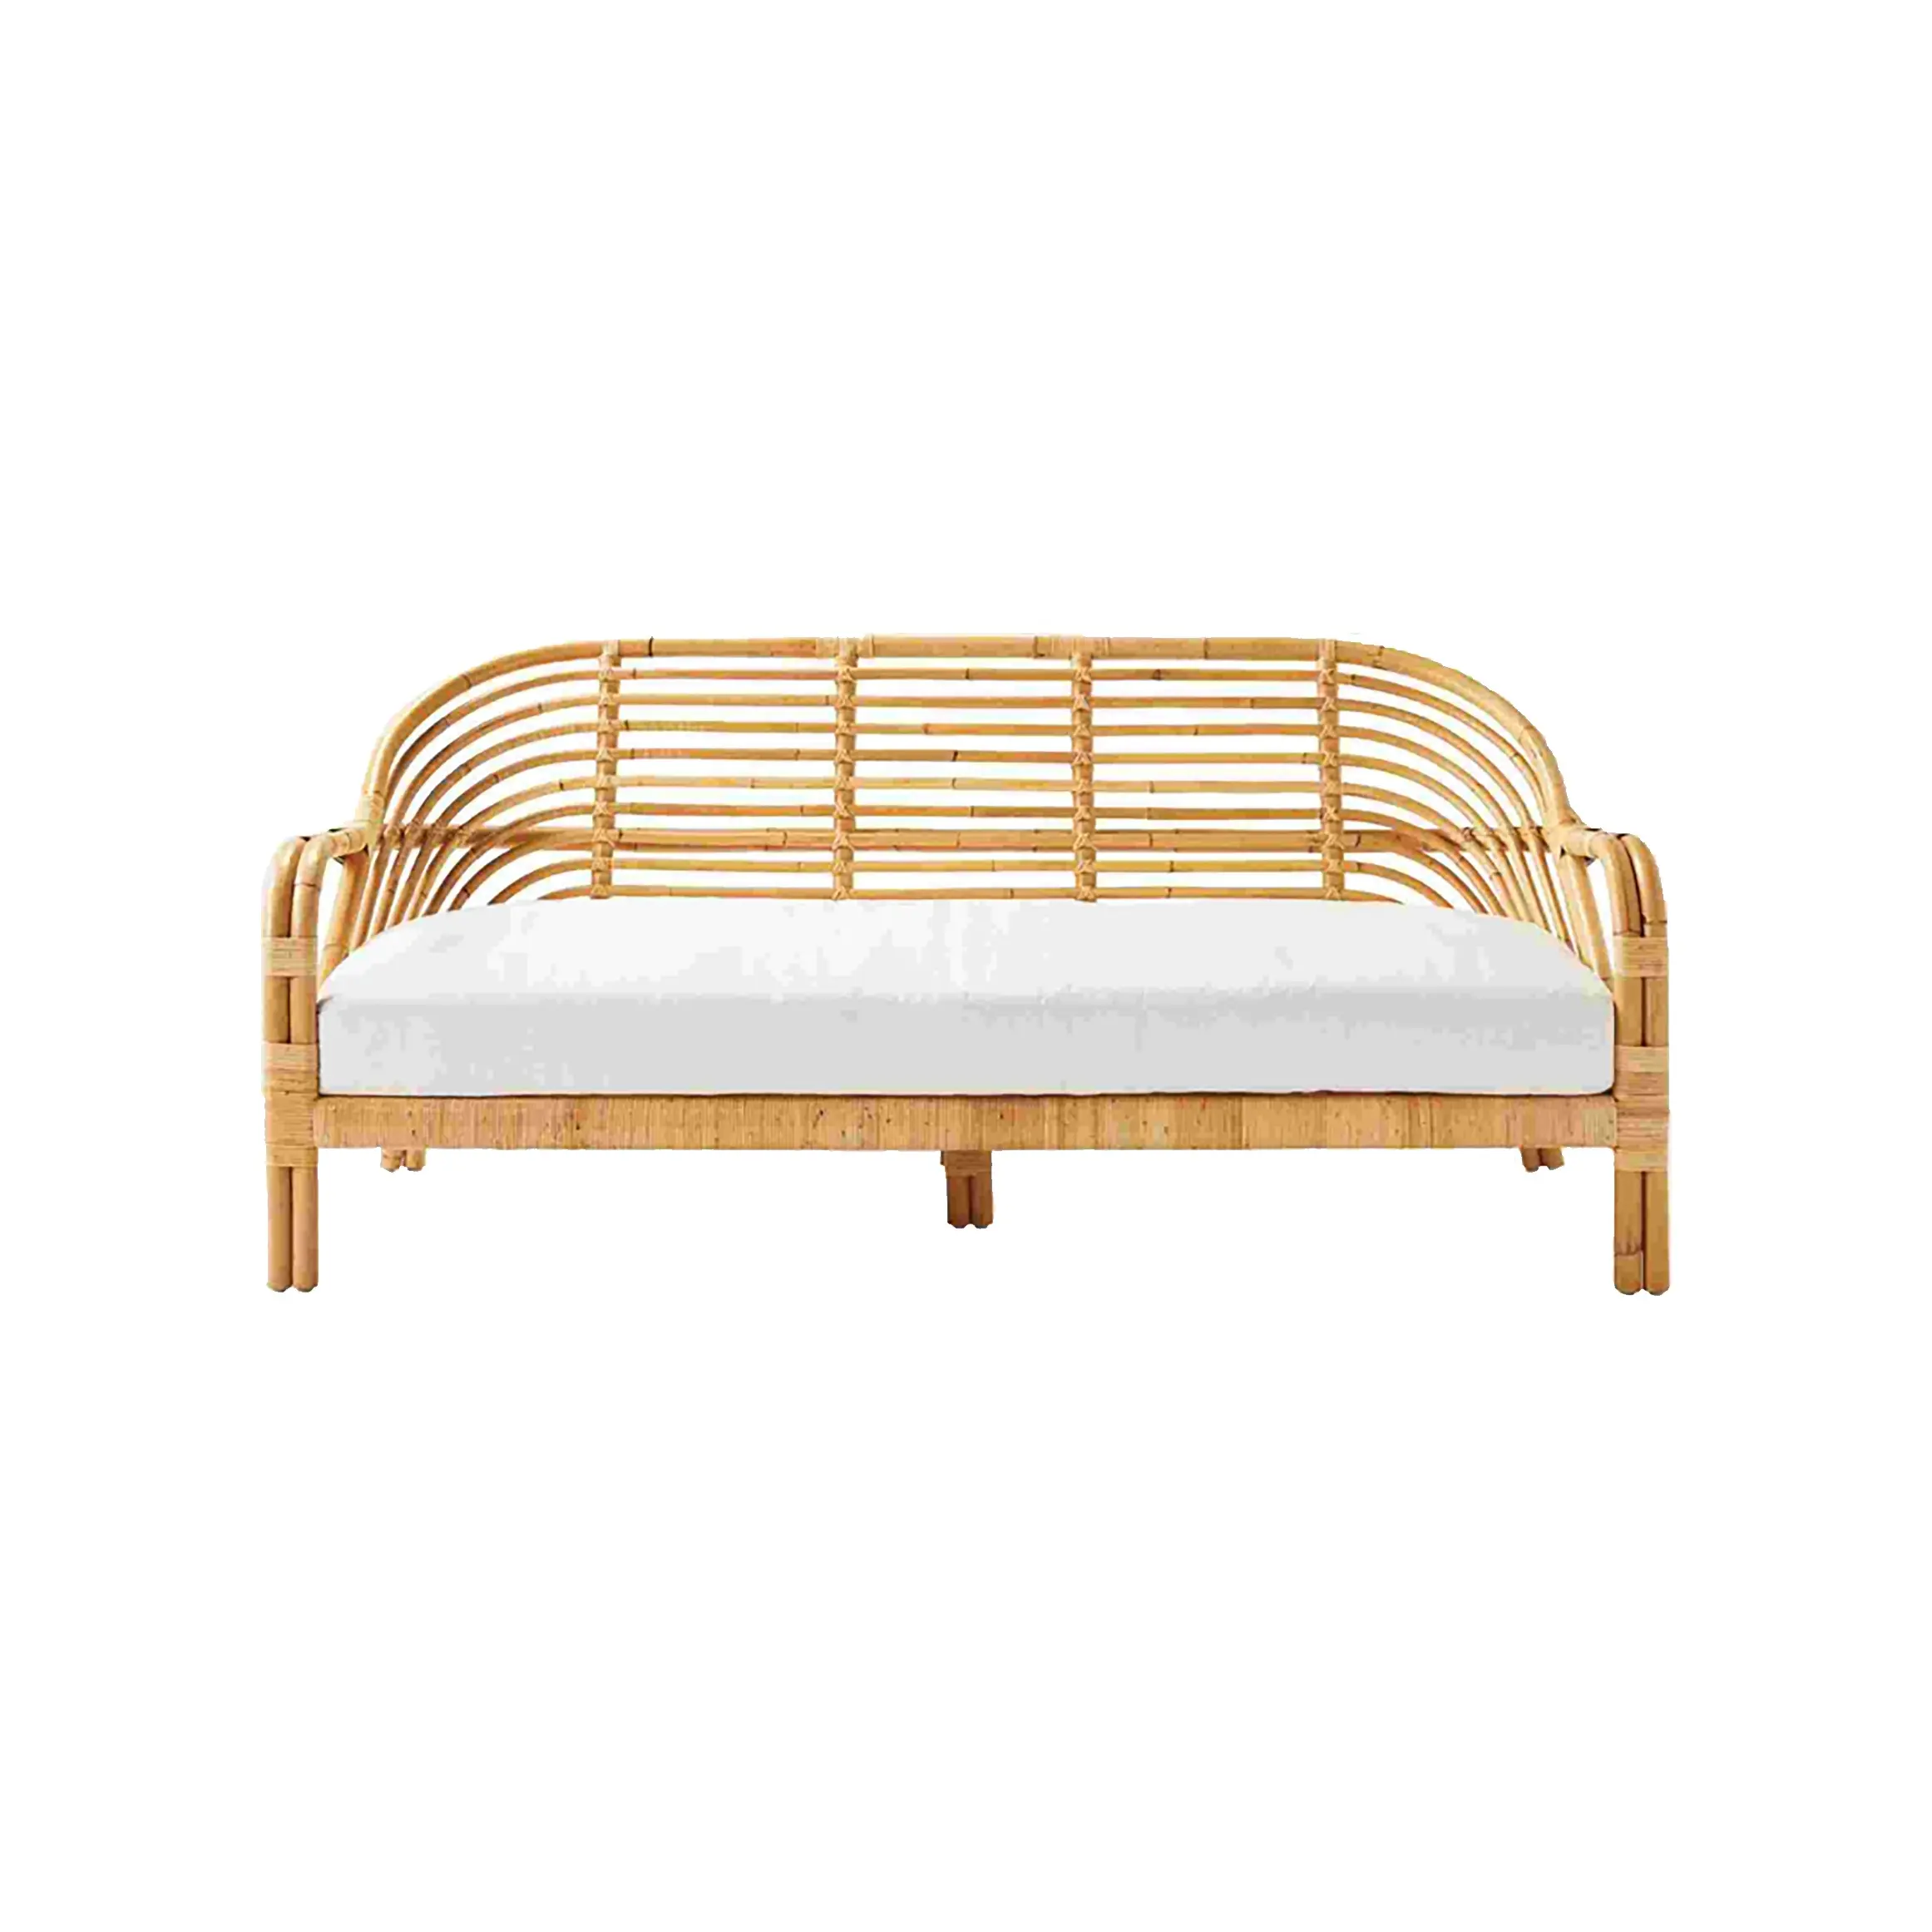 Nanda-sofá de ratán Natural para el hogar, mueble de alta calidad, color marrón